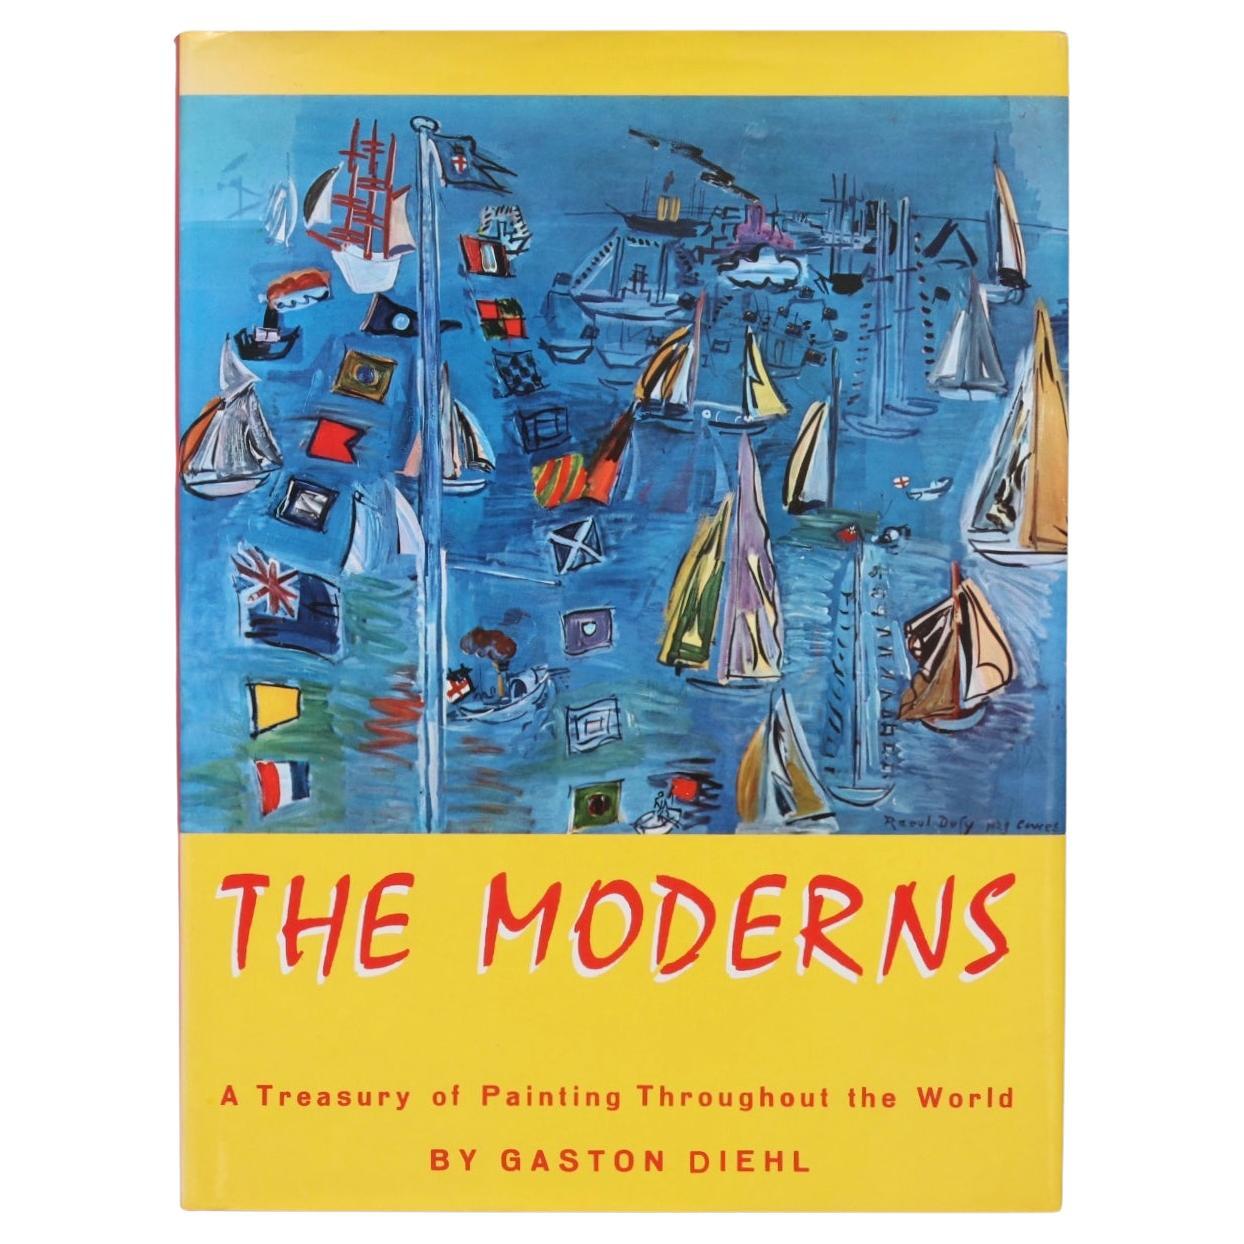 Moderns by Gaston Diehl